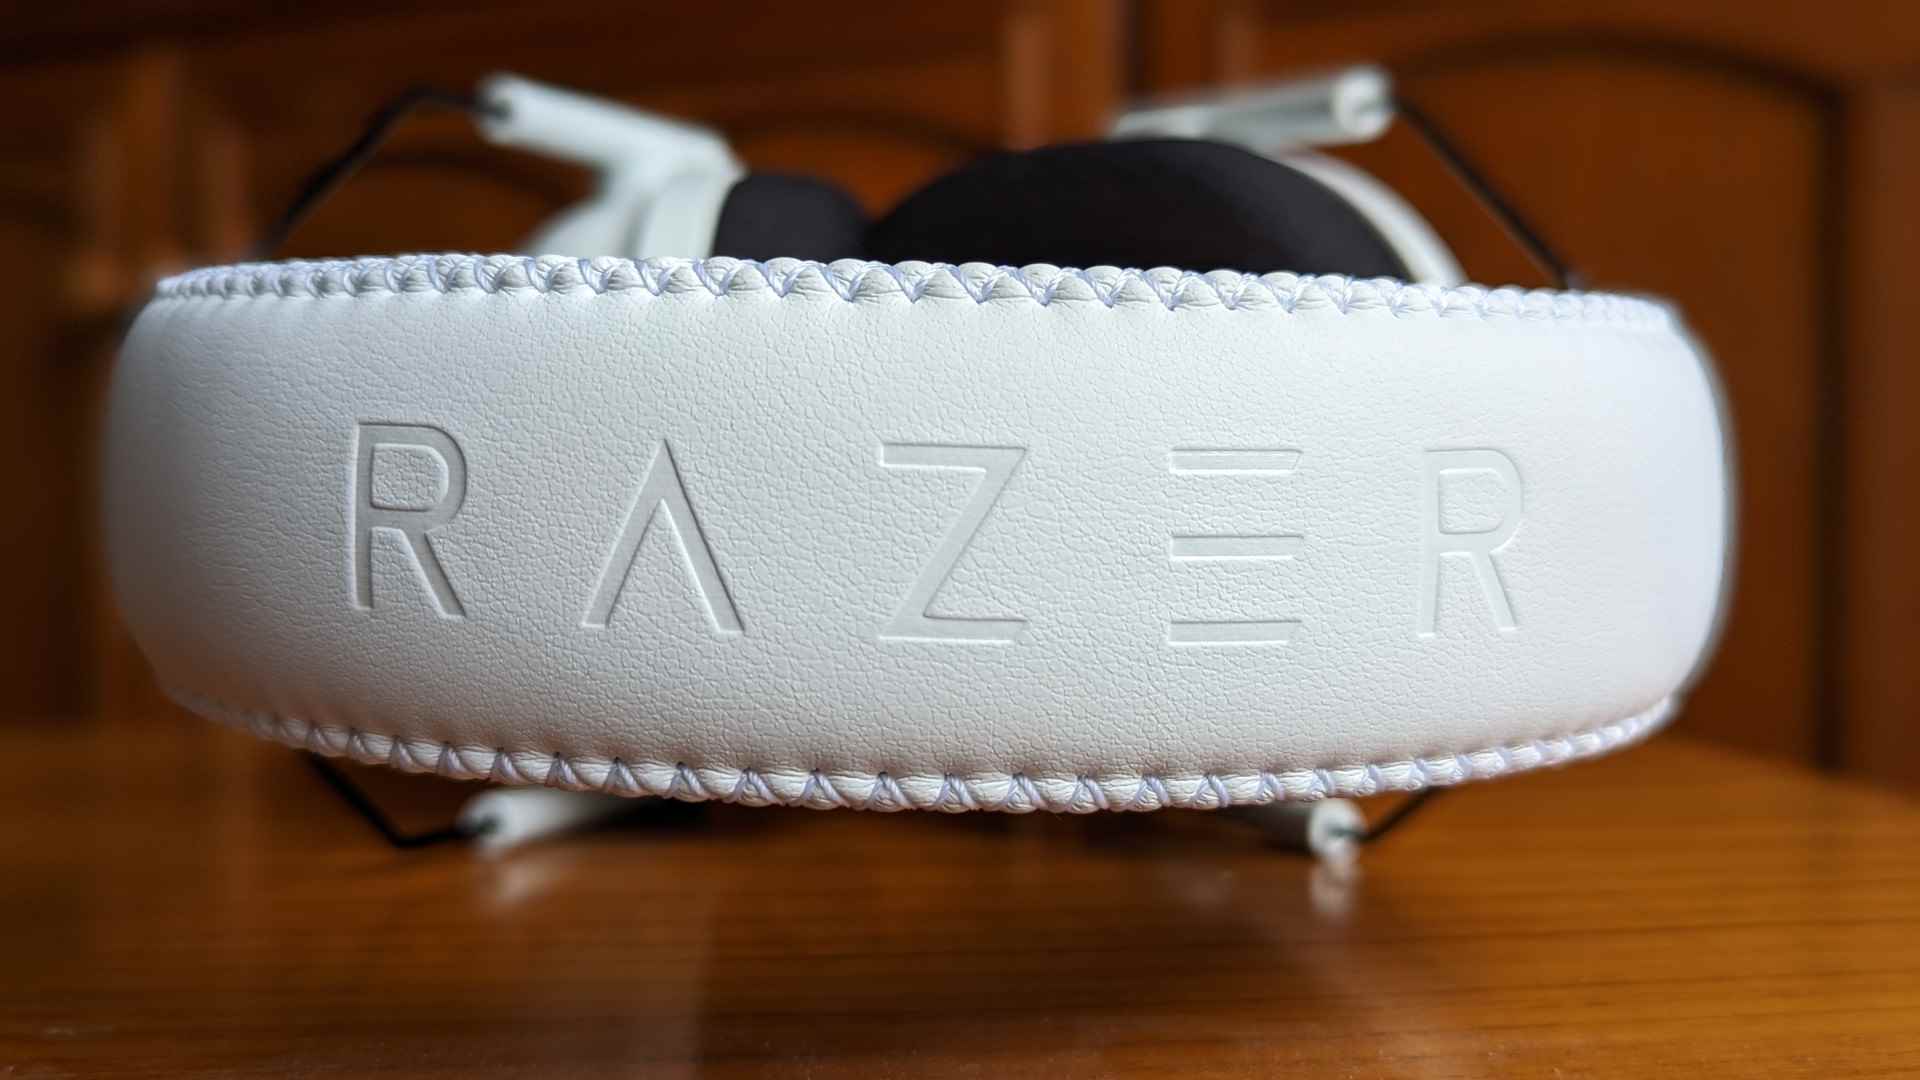 Razer BlackShark V2 Pro incelemesi: Ahşap bir yüzeyin üzerinde oturan kablosuz bir oyun kulaklığı.  Kafa bandına 'RAZER' yazısı işlenmiştir.